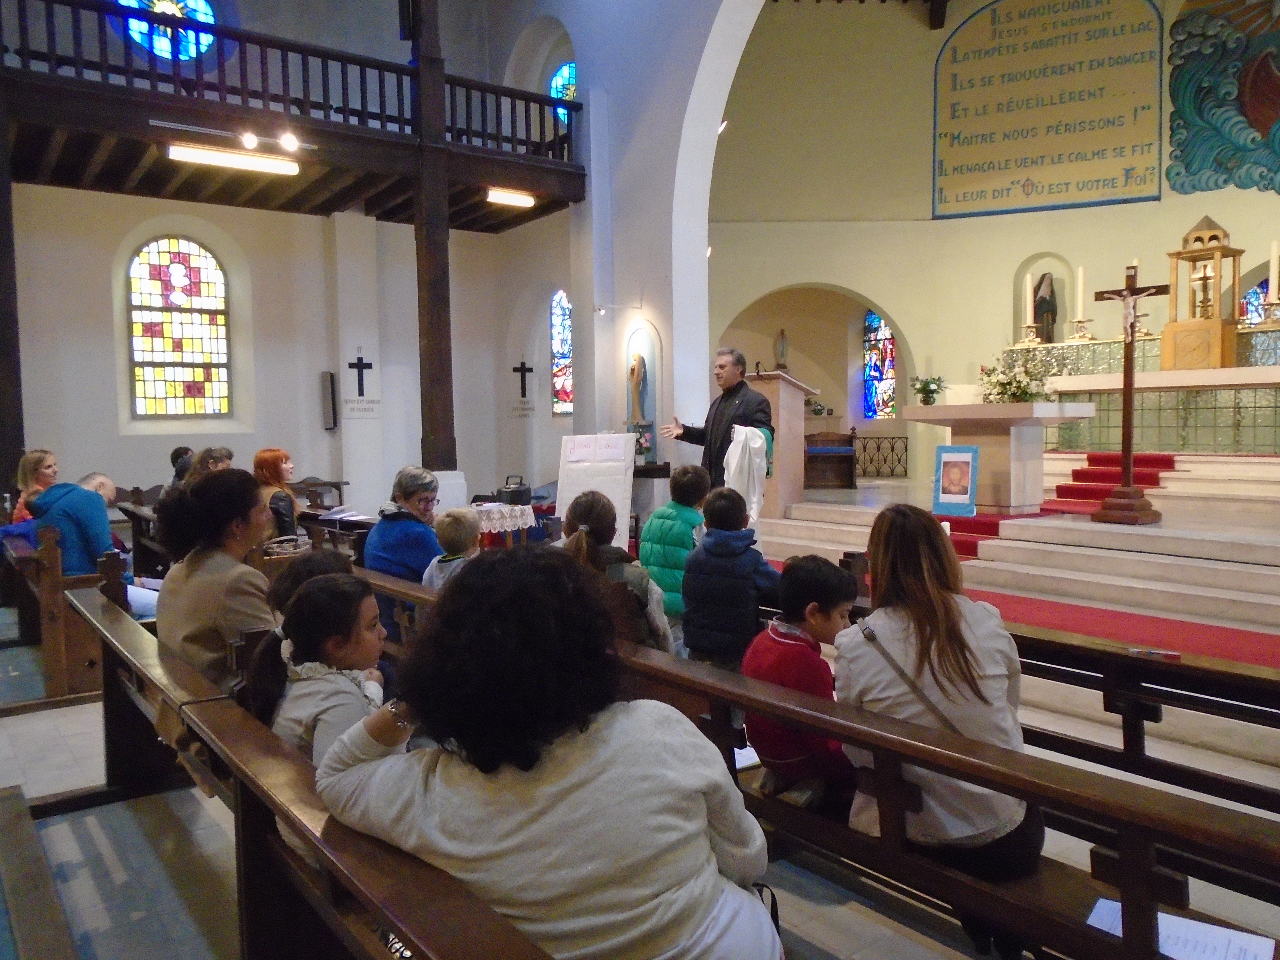 L'abbé se présente et parle aux enfants de sa vocation de prêtre